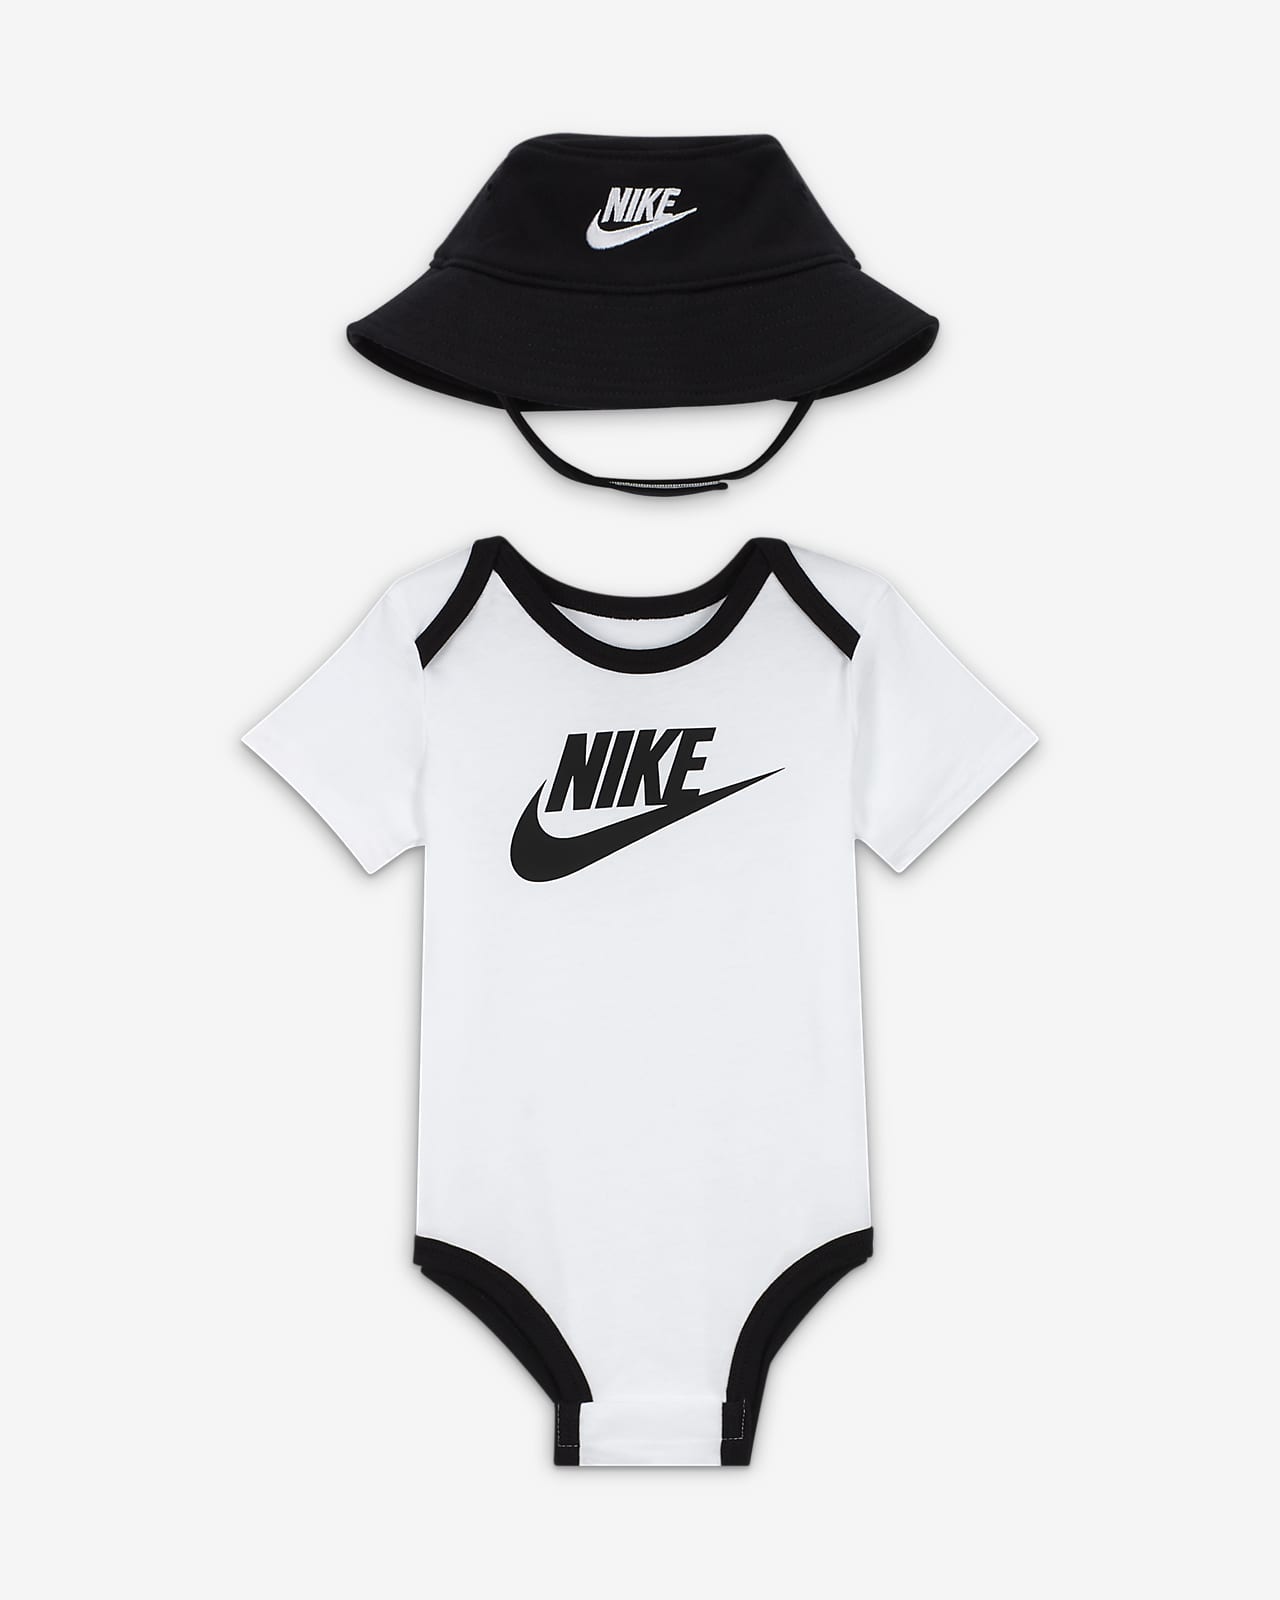 Nike Baby Bodysuit and Hat Box Set. Nike UK